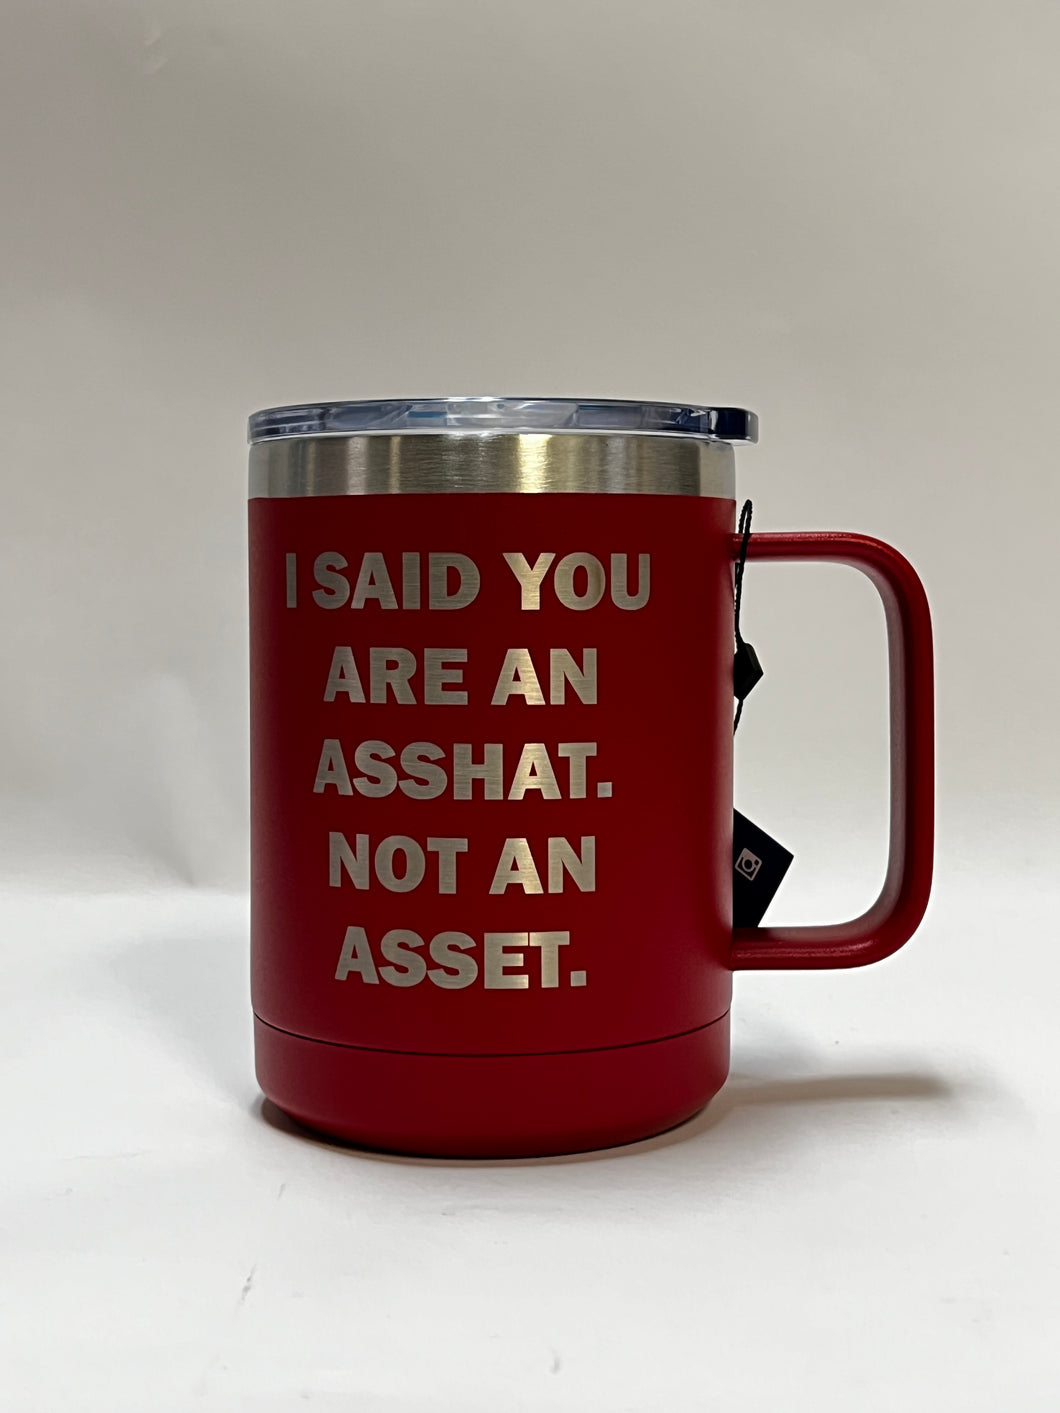 Not an Asset - 15oz Stainless Steel Mug